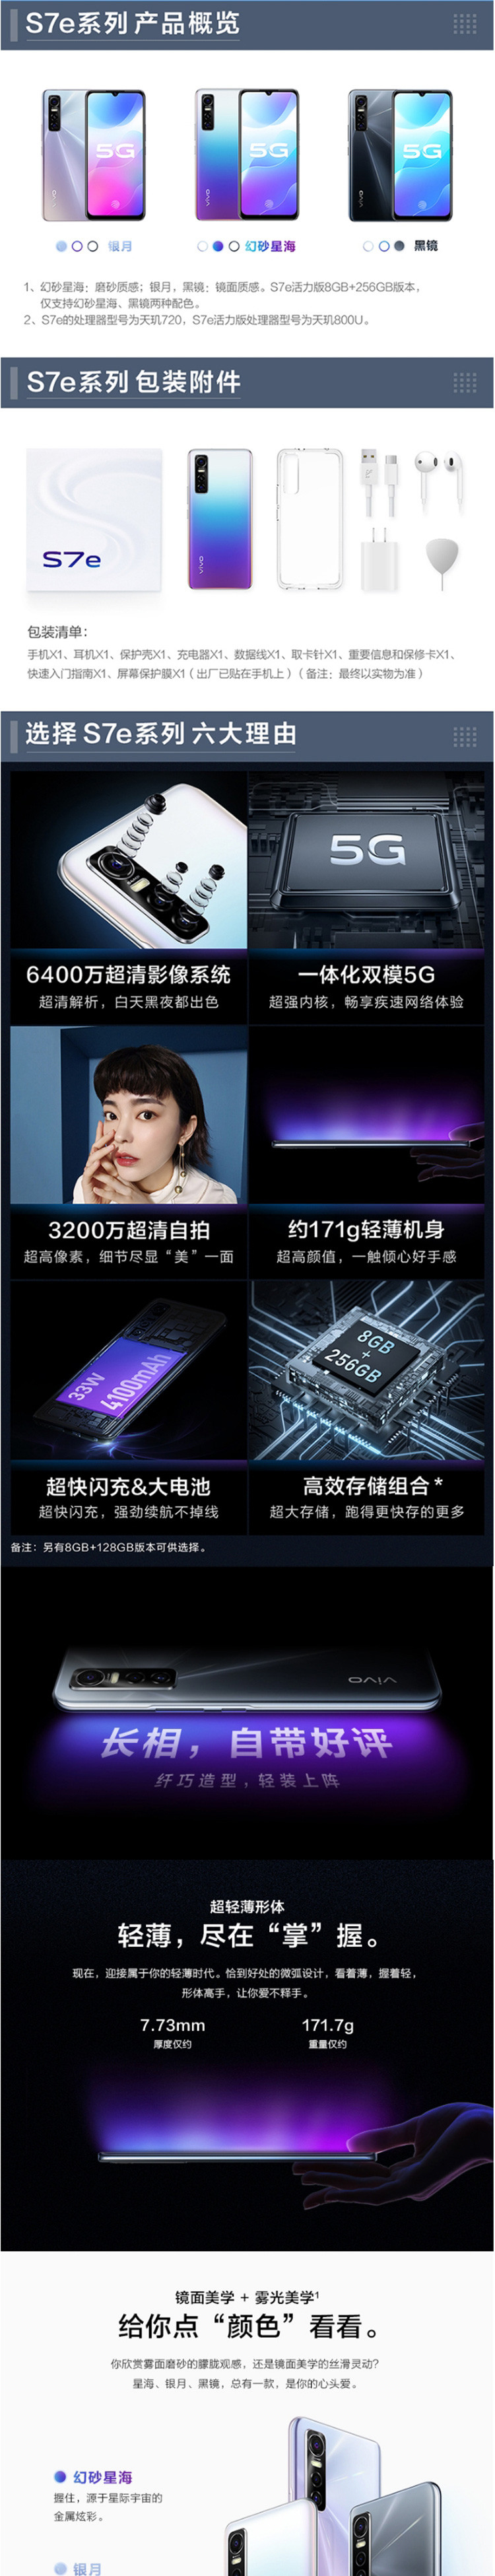 VIVO S7e活力版 8GB+128GB 5G 前置3200万超清自拍 全网通手机